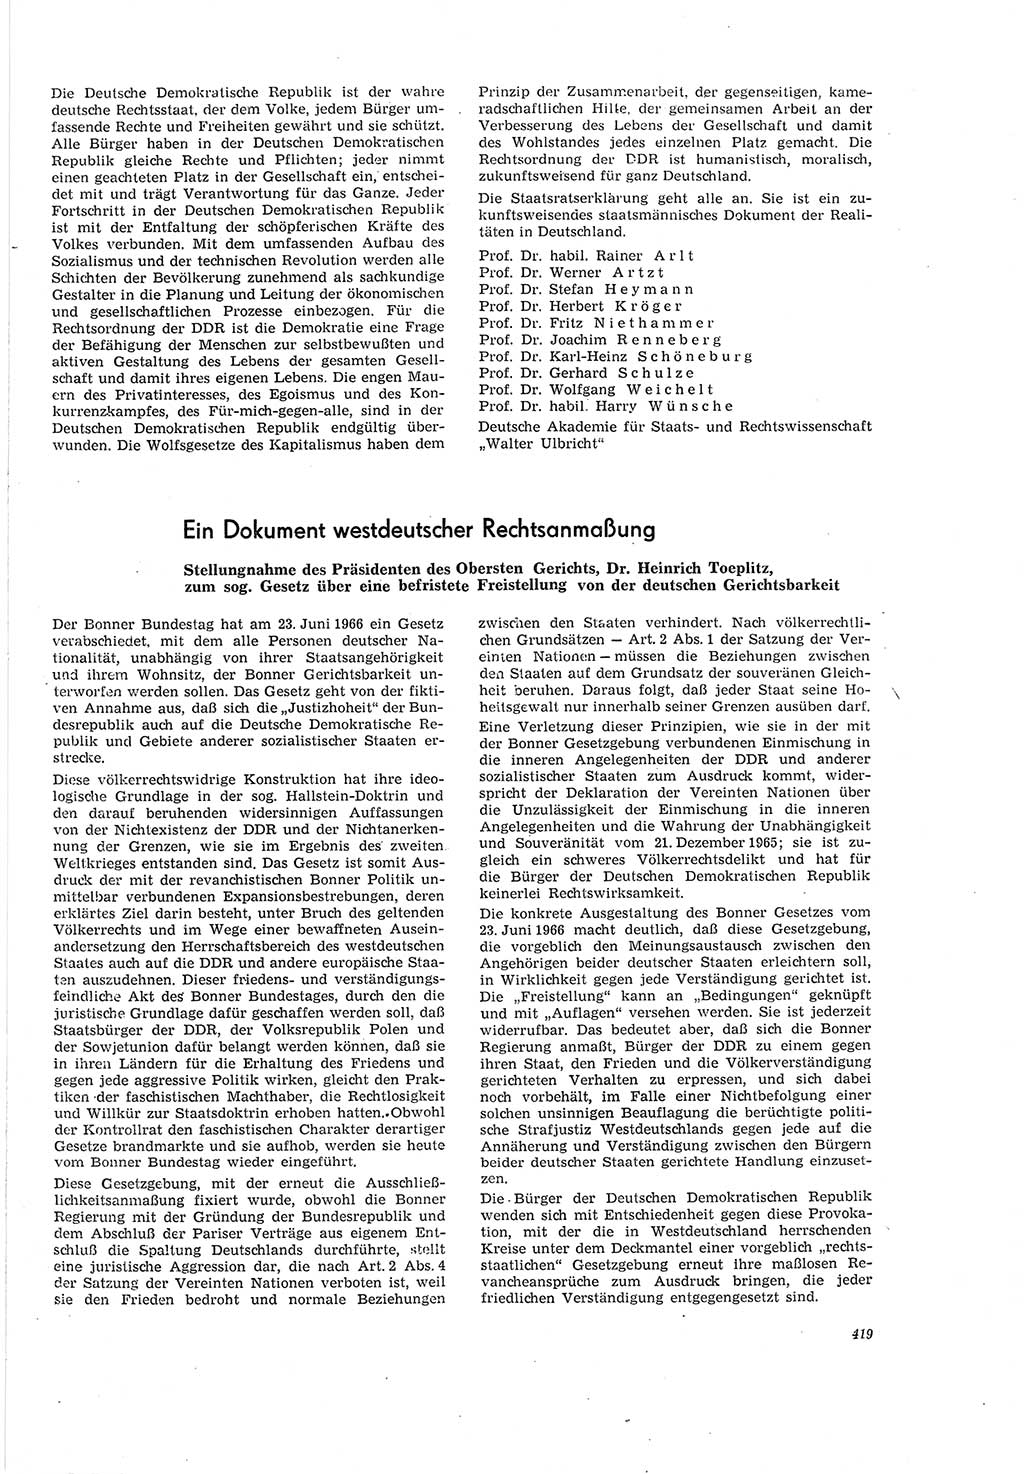 Neue Justiz (NJ), Zeitschrift für Recht und Rechtswissenschaft [Deutsche Demokratische Republik (DDR)], 20. Jahrgang 1966, Seite 419 (NJ DDR 1966, S. 419)